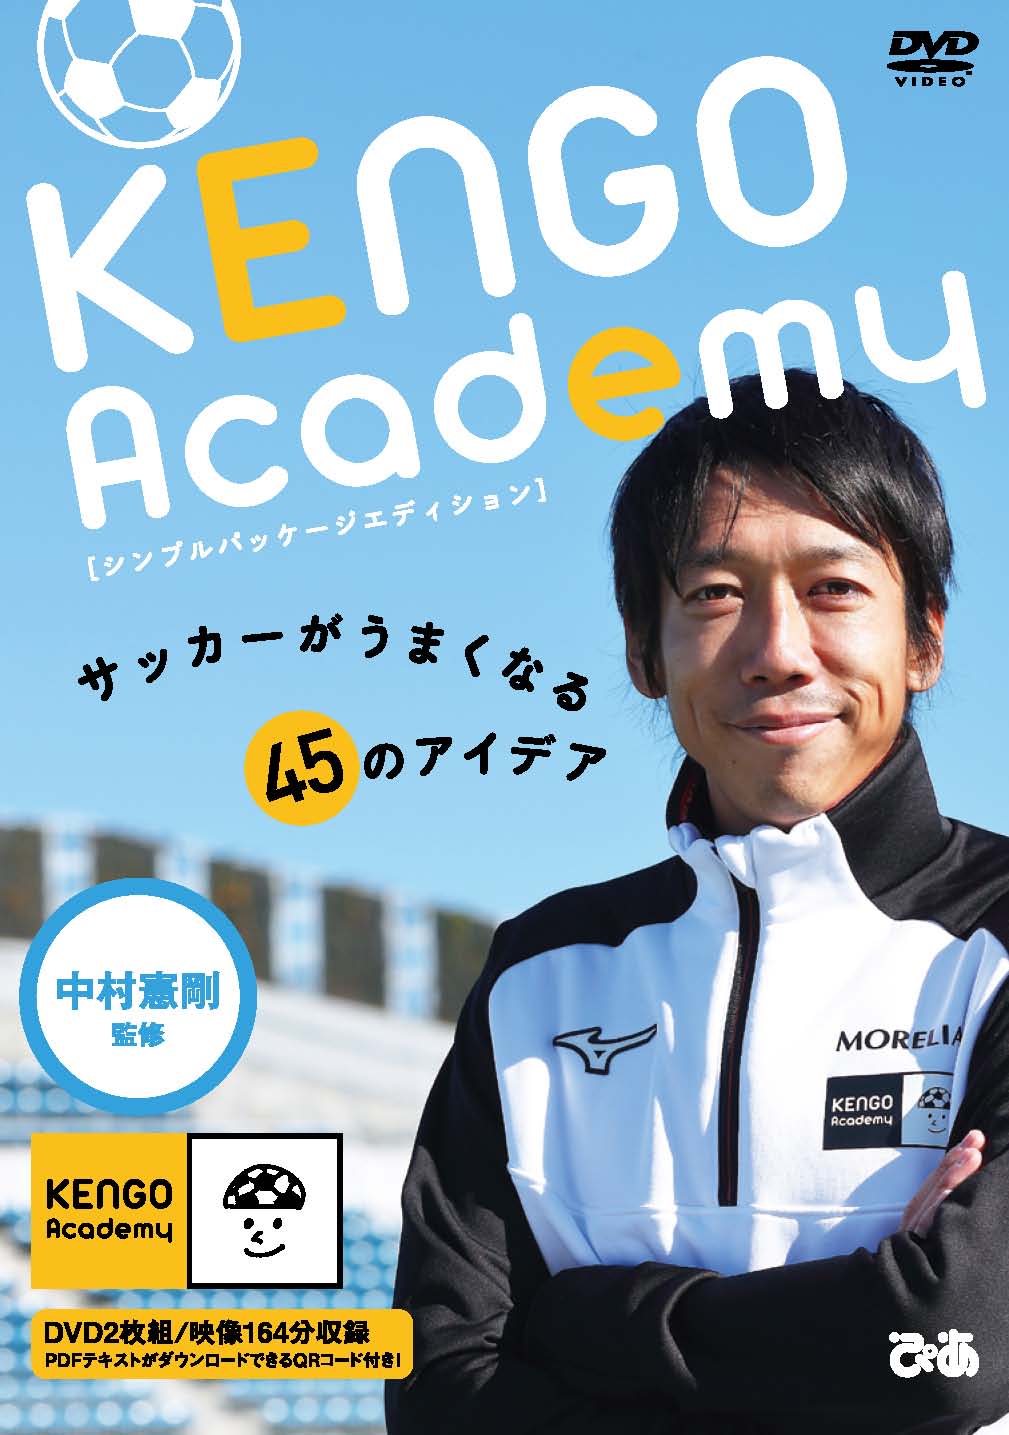 KENGO academy DVD2枚 ノート付-